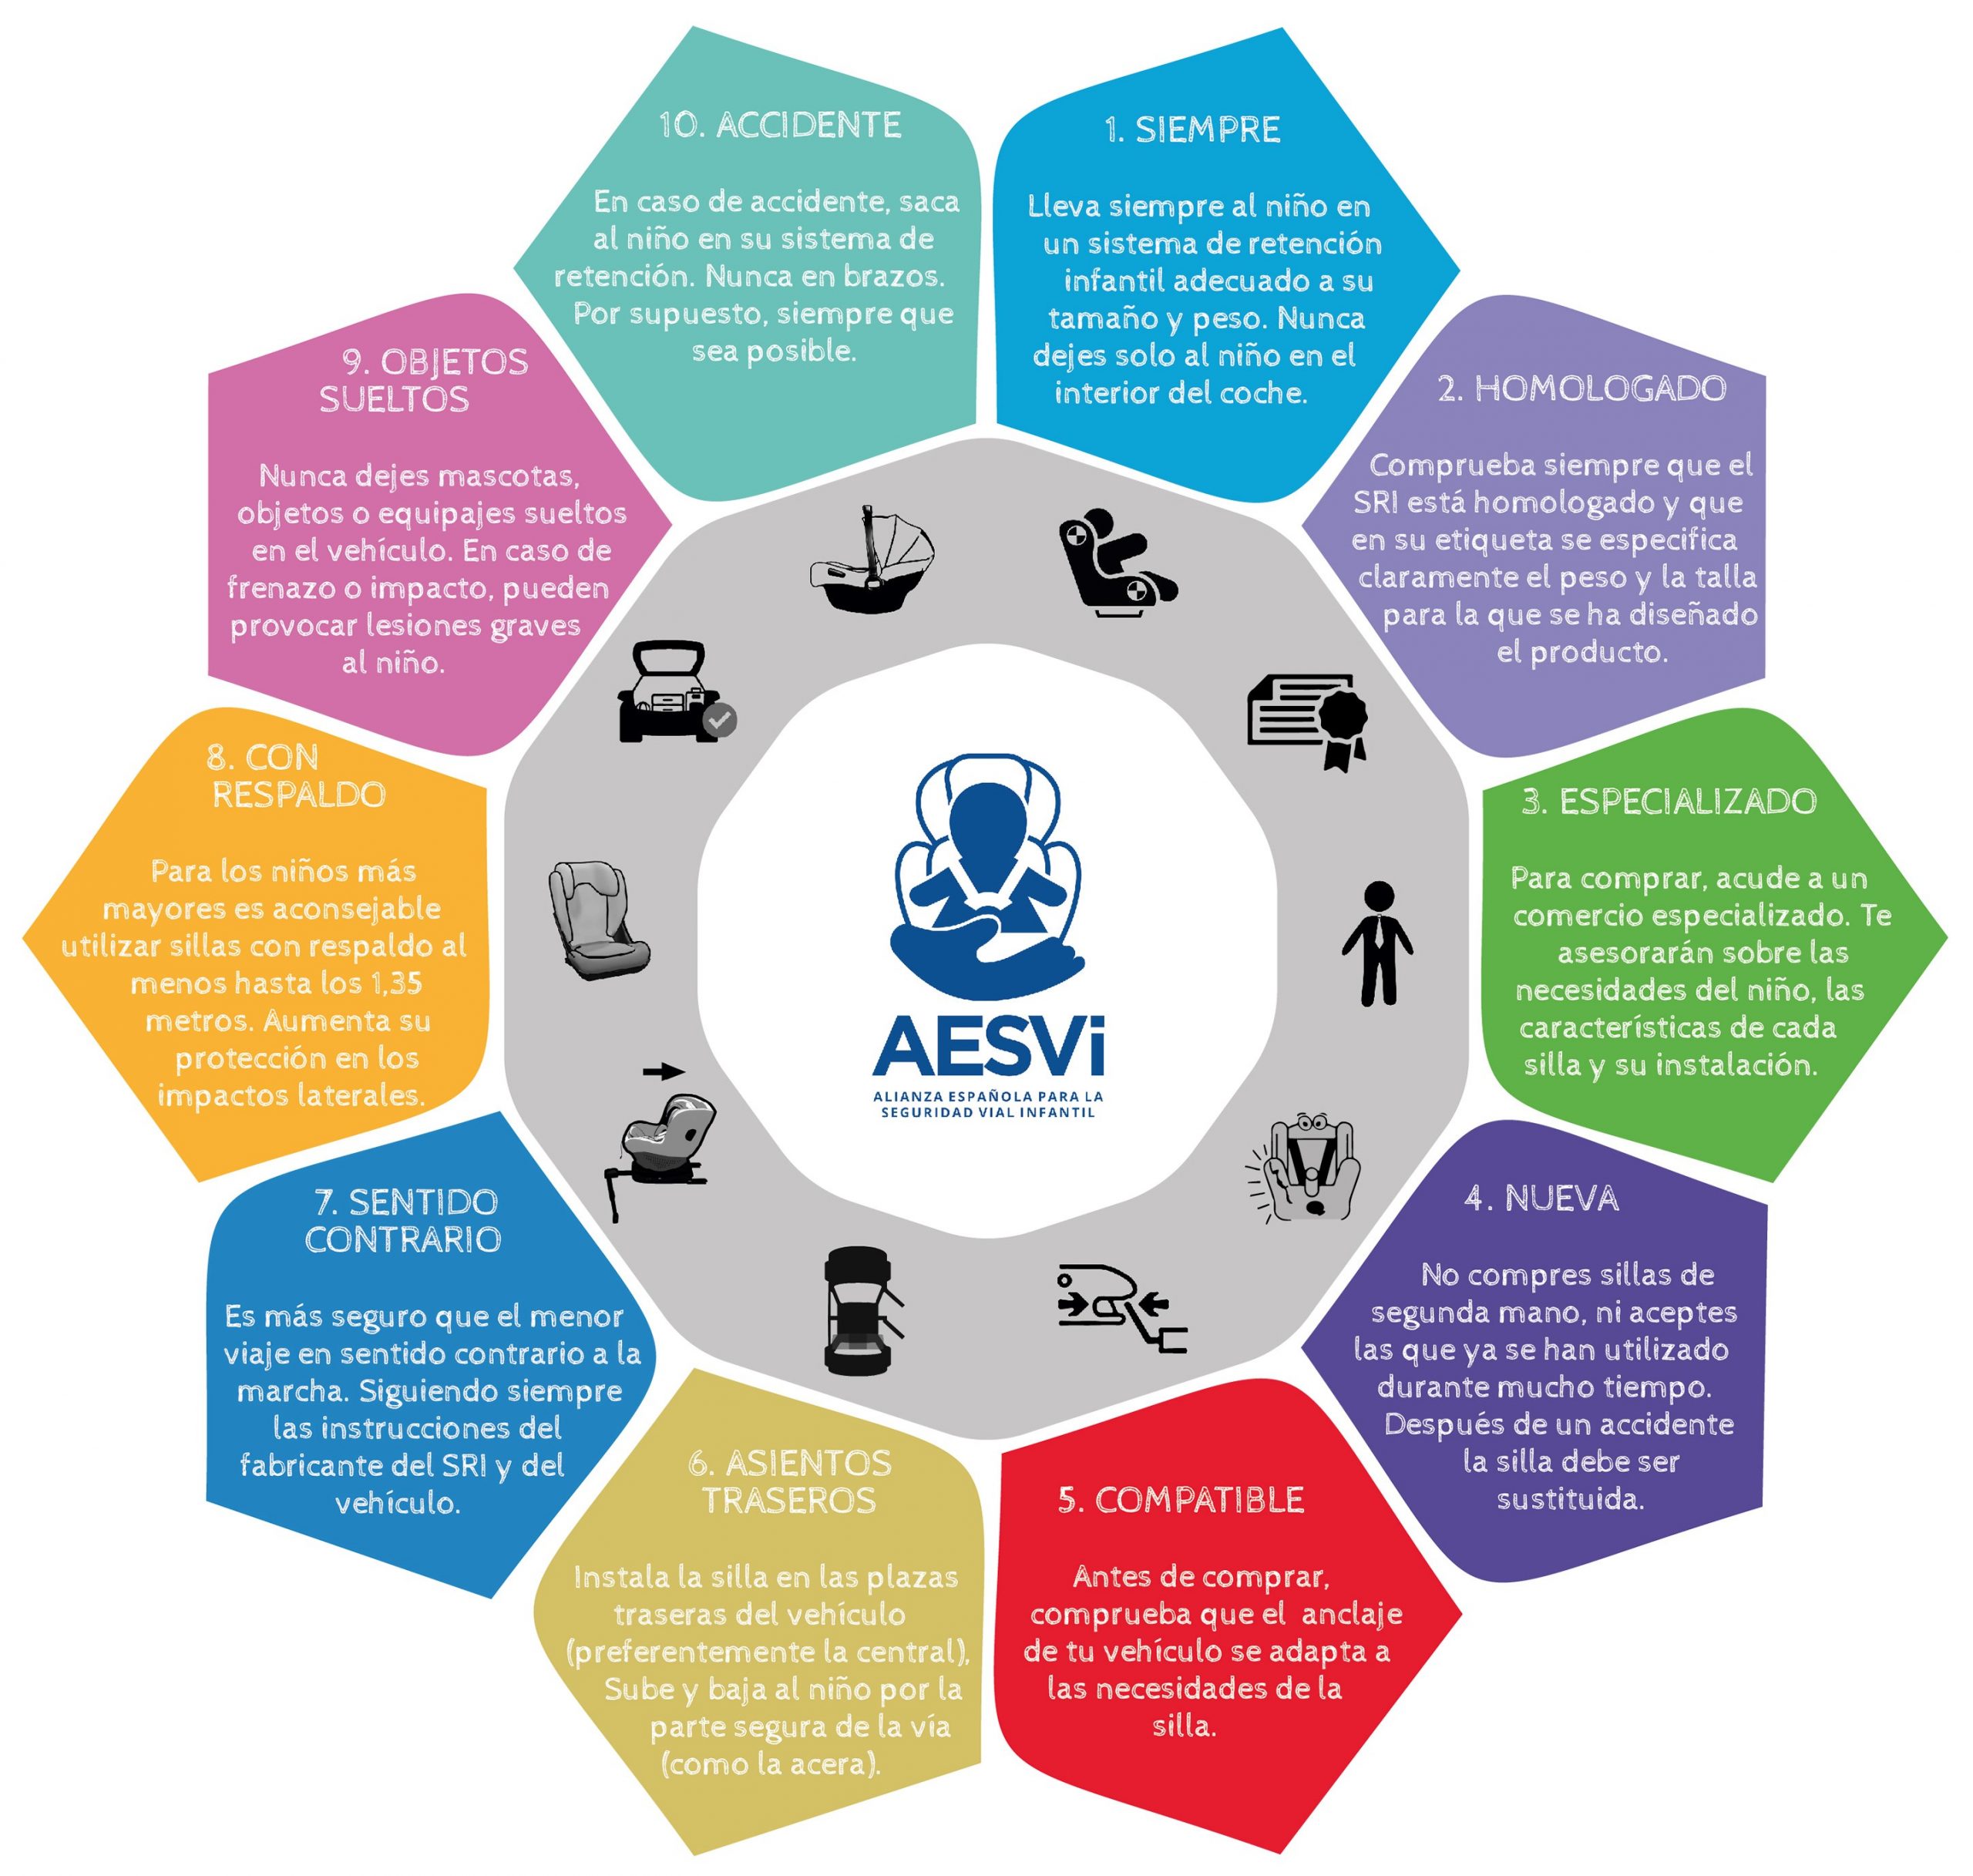 Sistemas de retención infantil en automóviles según peso y estatura del niño